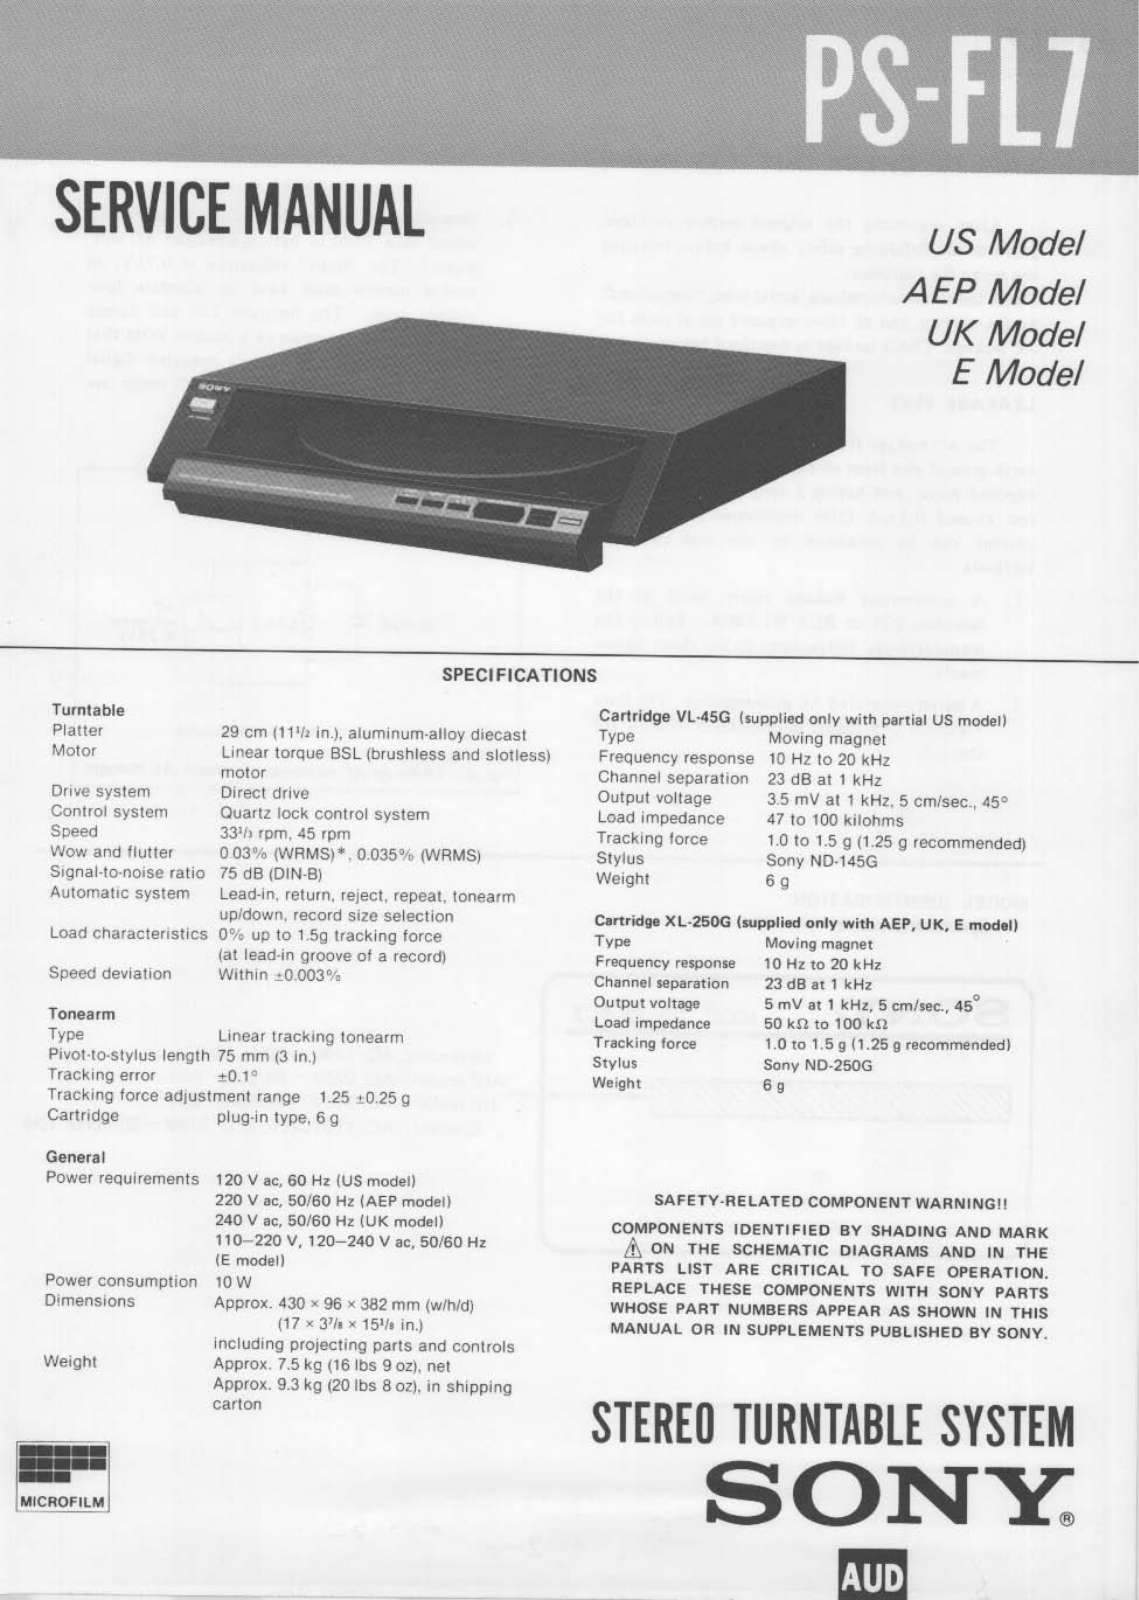 Sony PS-FL7 Service Manual